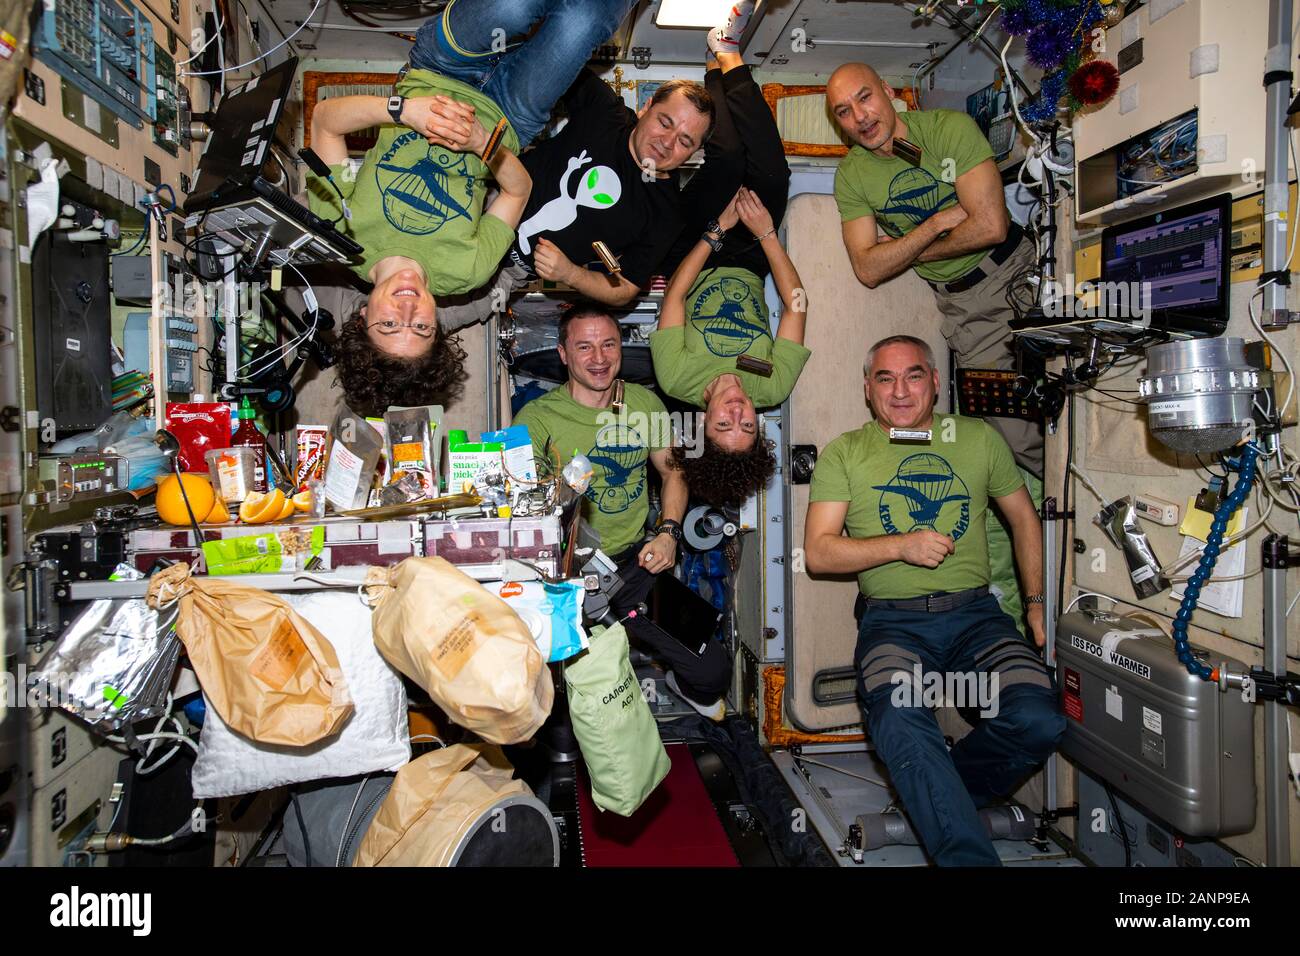 ISS - 31 Dec 2019 - Les six membres de l'équipage Expedition 61 est rassemblé à l'intérieur du module de service Zvezda pour un repas de réveillon du Nouvel An. Dans le sens horaire à partir de Banque D'Images